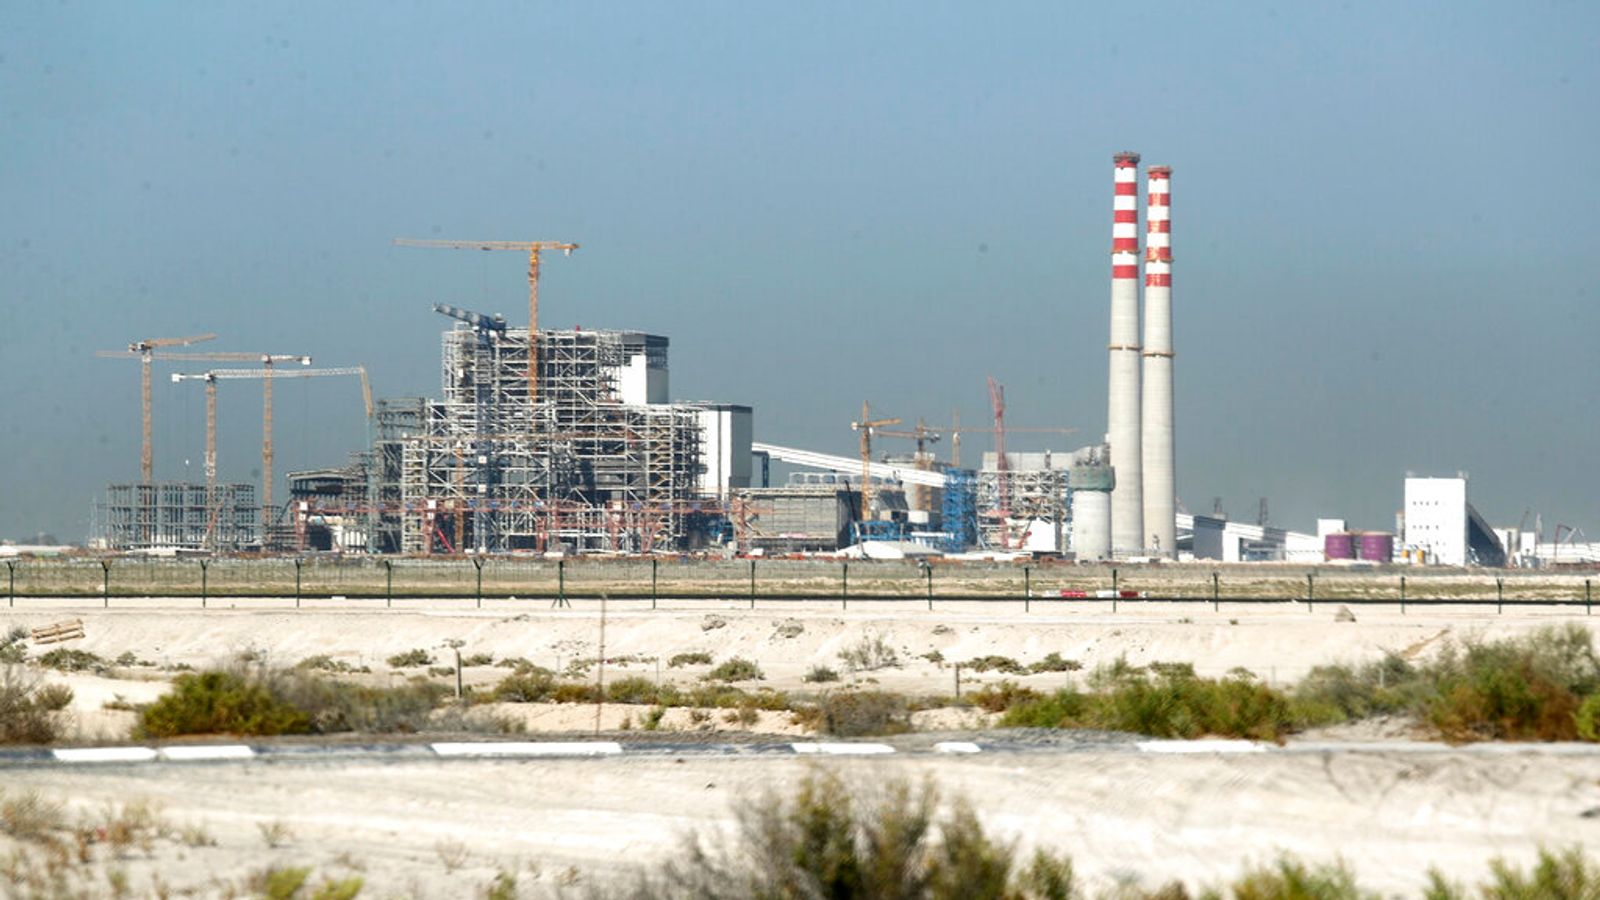 ОАЭ, принимающая COP28, понизили климатический план до «в значительной степени неадекватного» во время проведения саммита |  Климатические новости